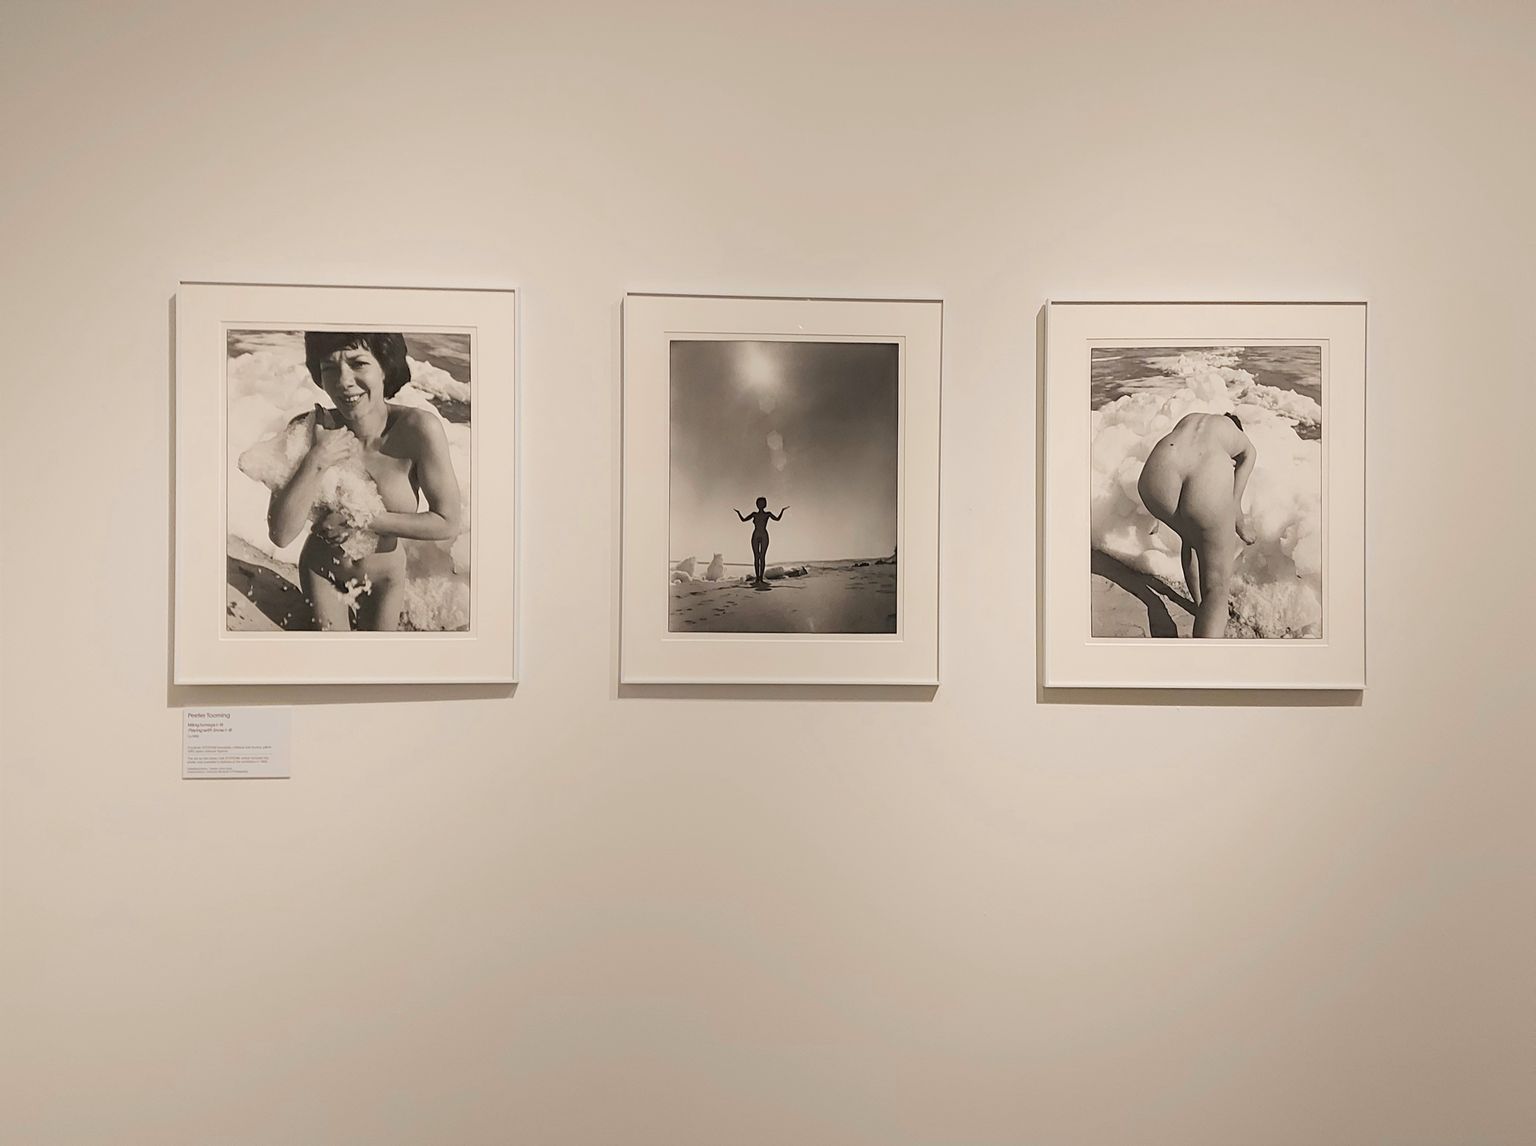 Пеэтер Тооминг, «Игра со снегом» I, II и III, снято примерно в 1980 году. «Игра со снегом» была частью набора Стодом фотоклуба, получившего диплом на конкурсе «Женщины в фотографии» в 1983 году.